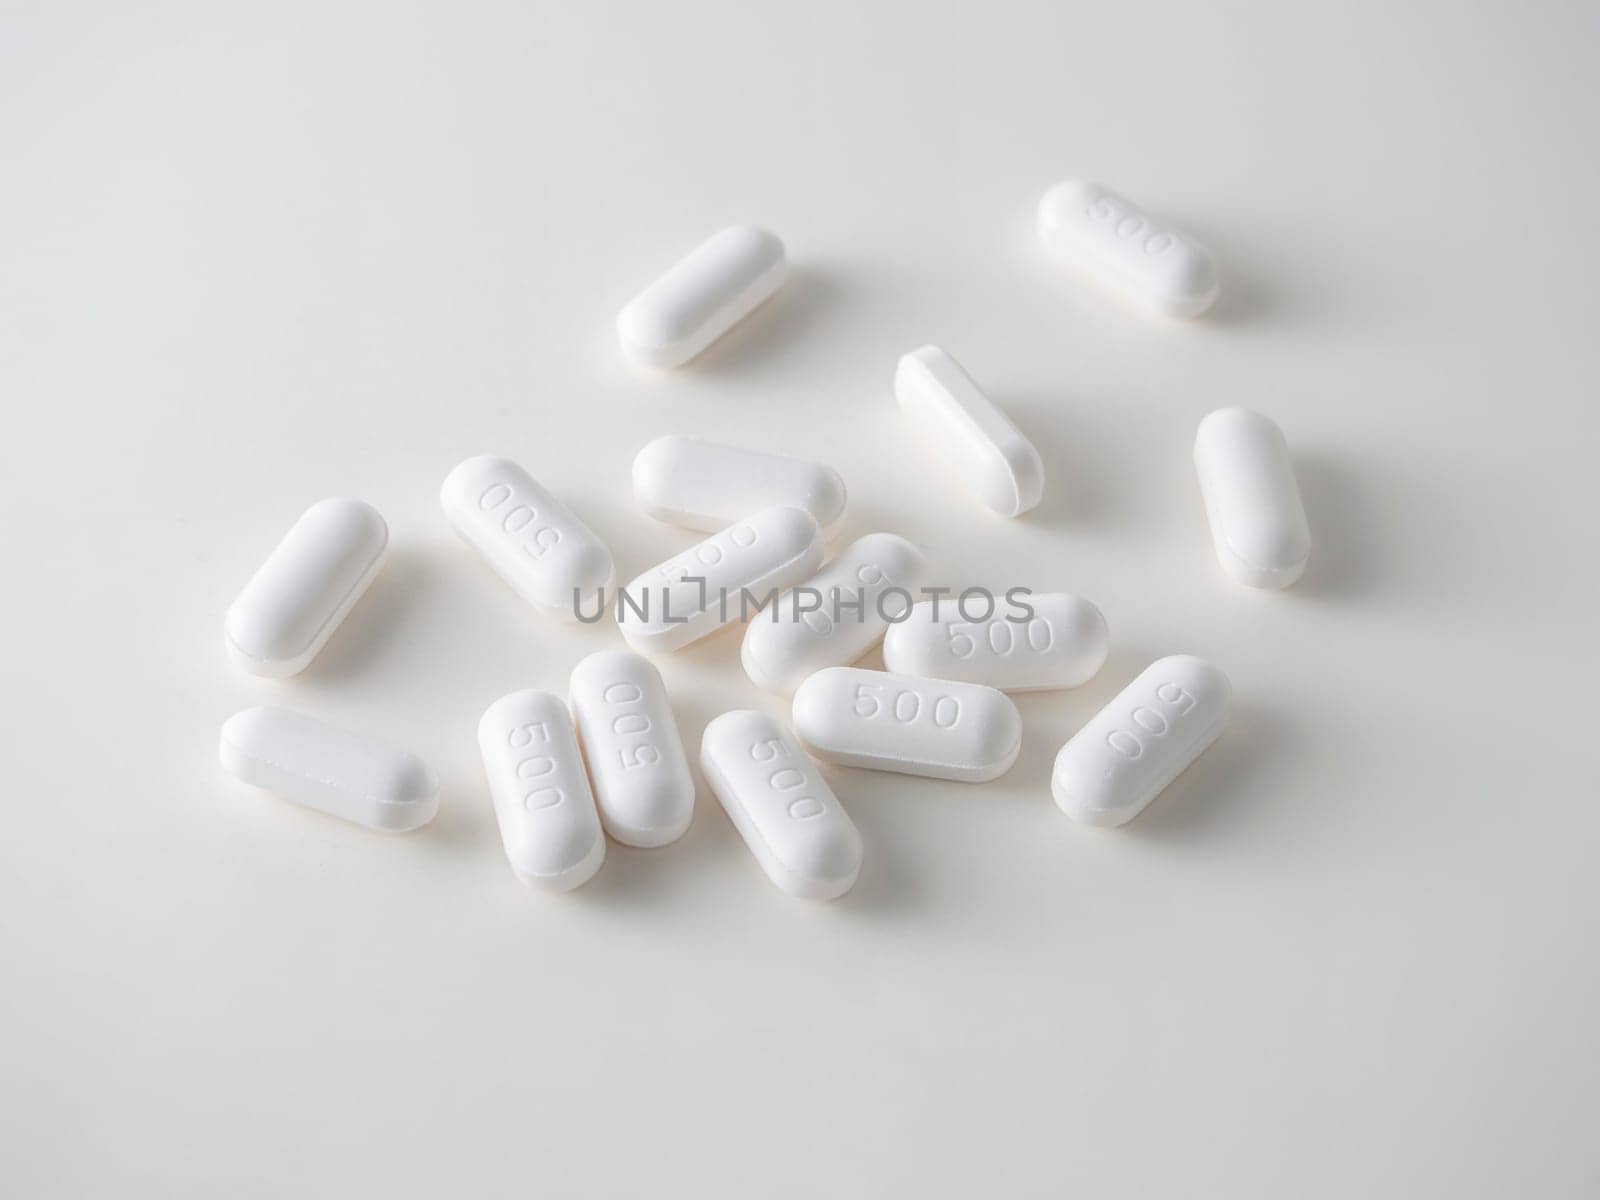 white medical tablets over white.